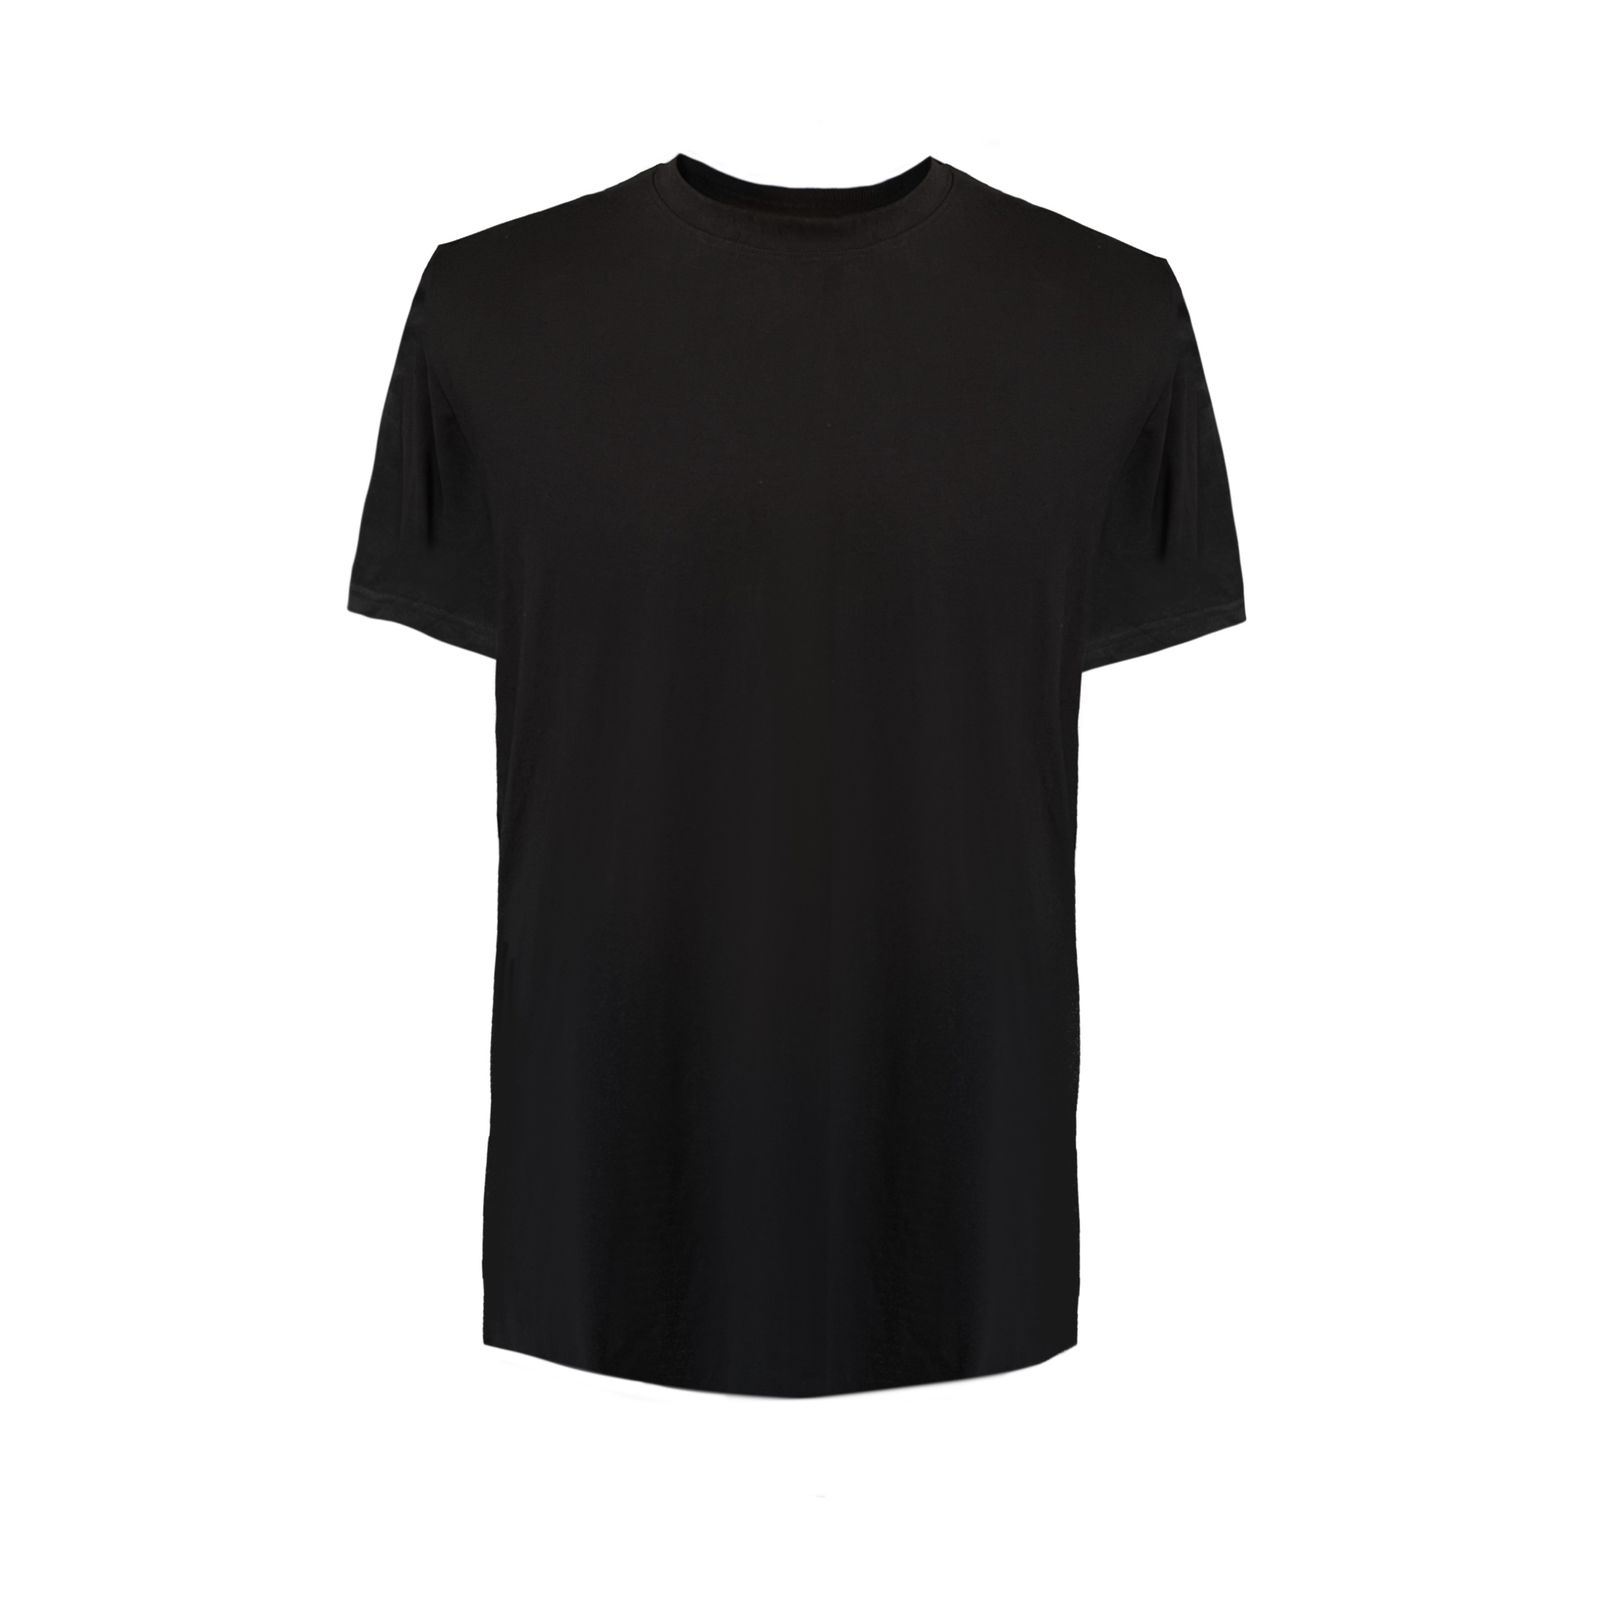 تی شرت آستین کوتاه مردانه کیکی رایکی مدل Mbb20143-001 -  - 1